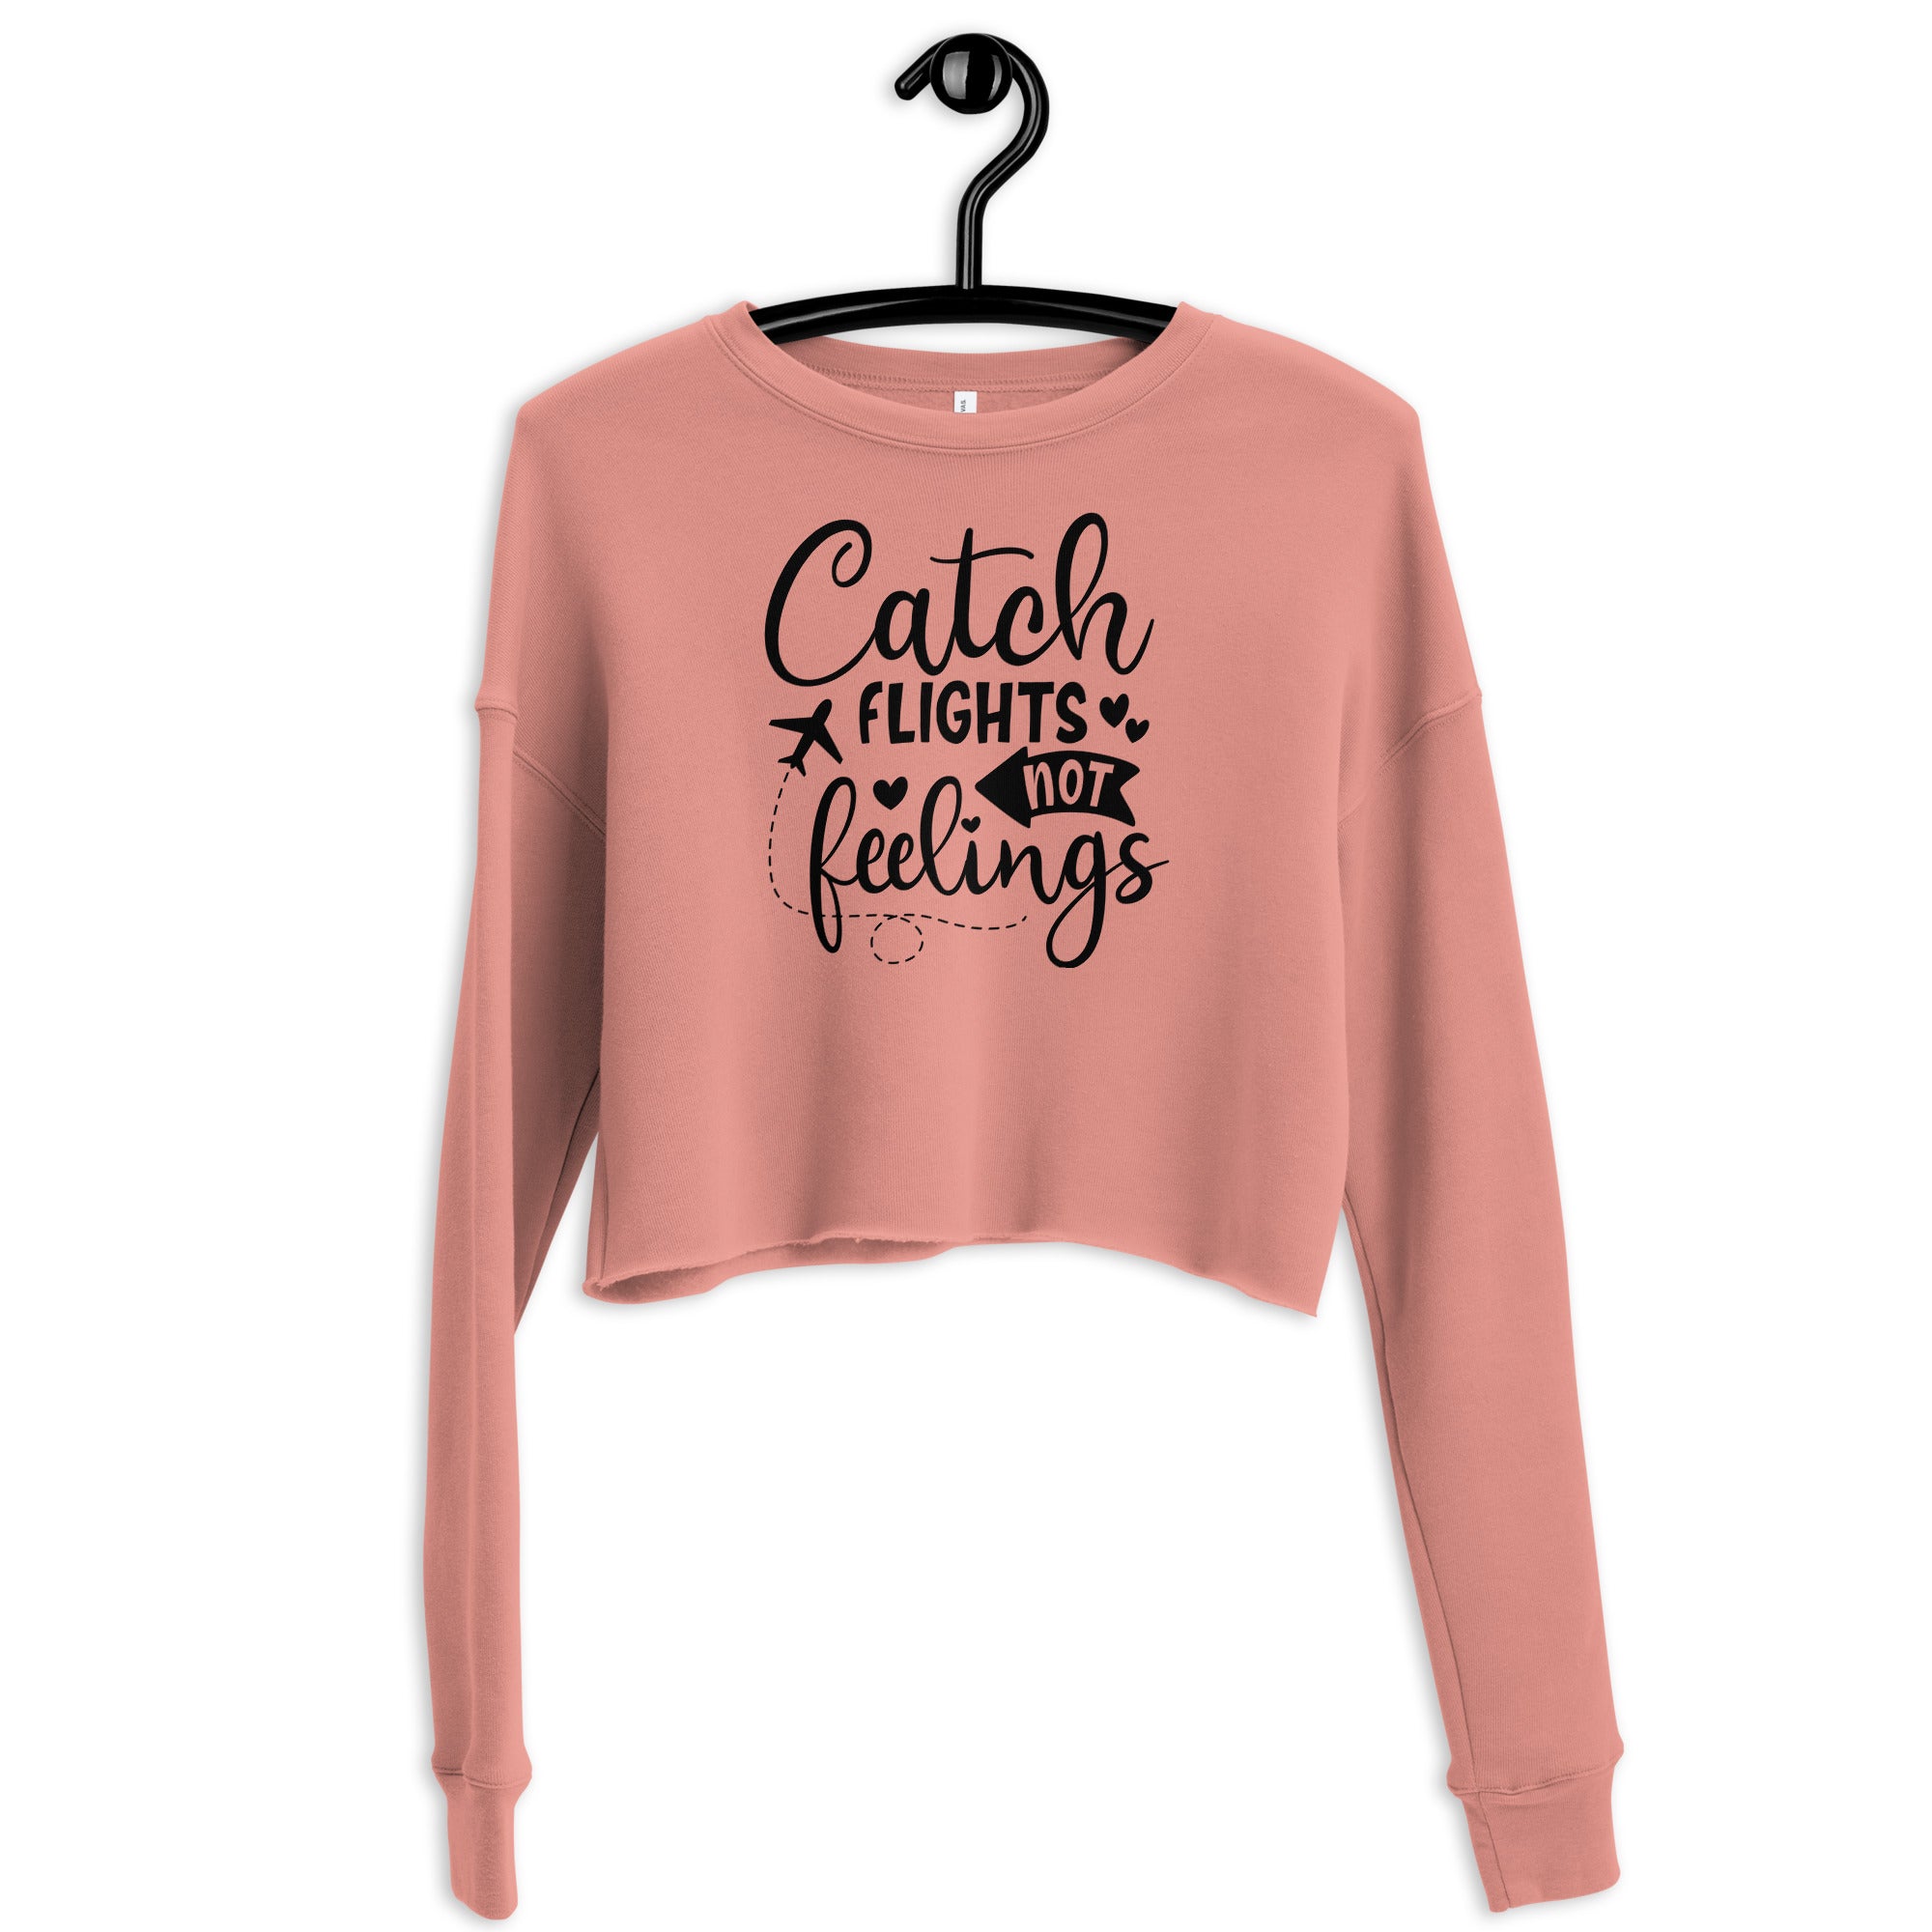 Catch Flights not Feelings - Crop Sweatshirt